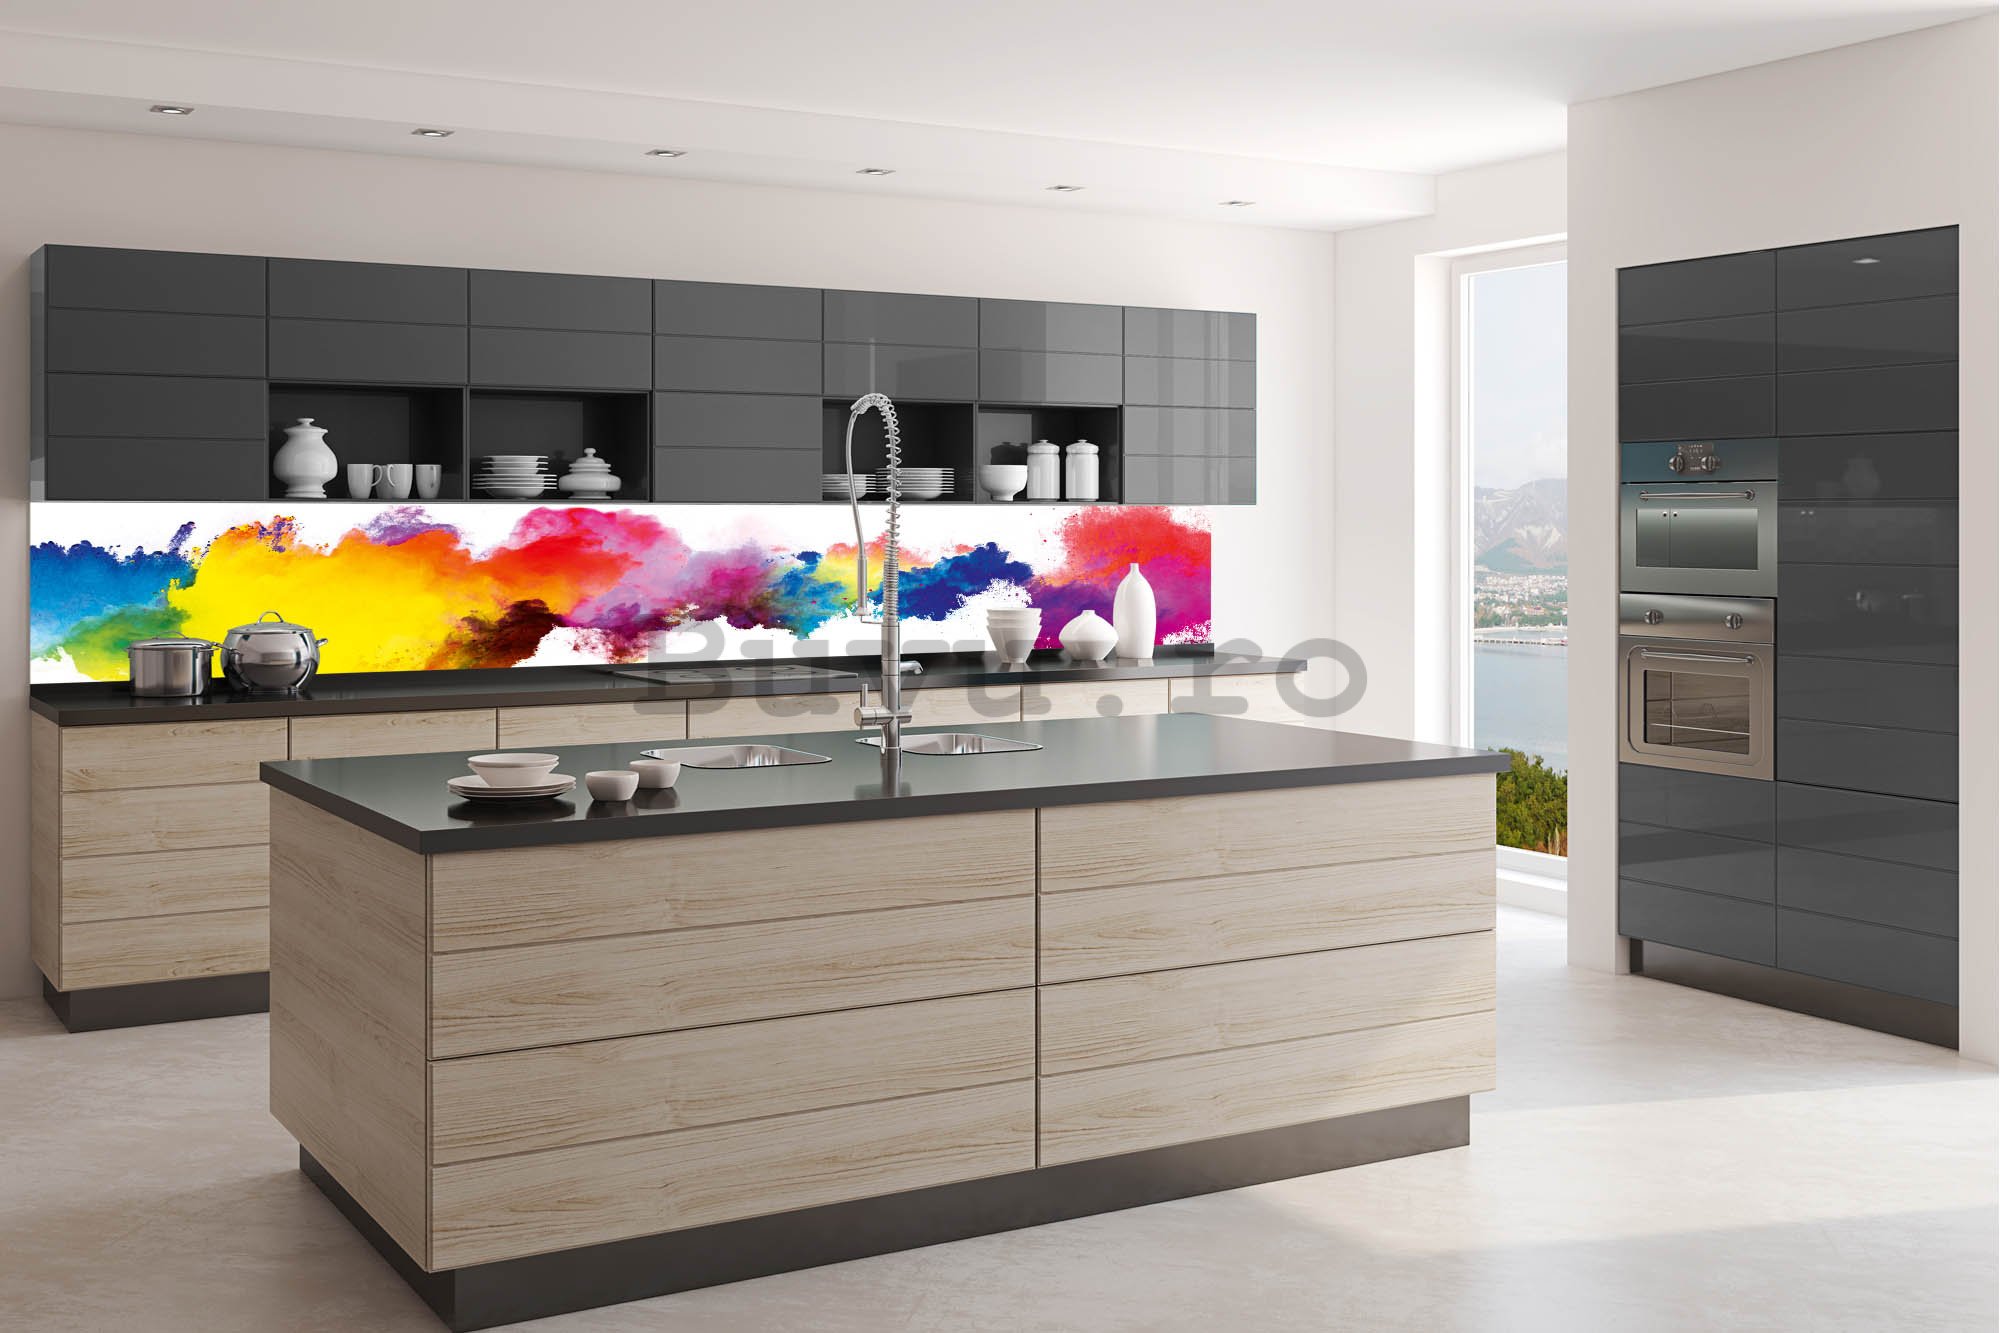 Tapet autoadeziv lavabil pentru bucătărie - Explozie de culori, 350x60 cm